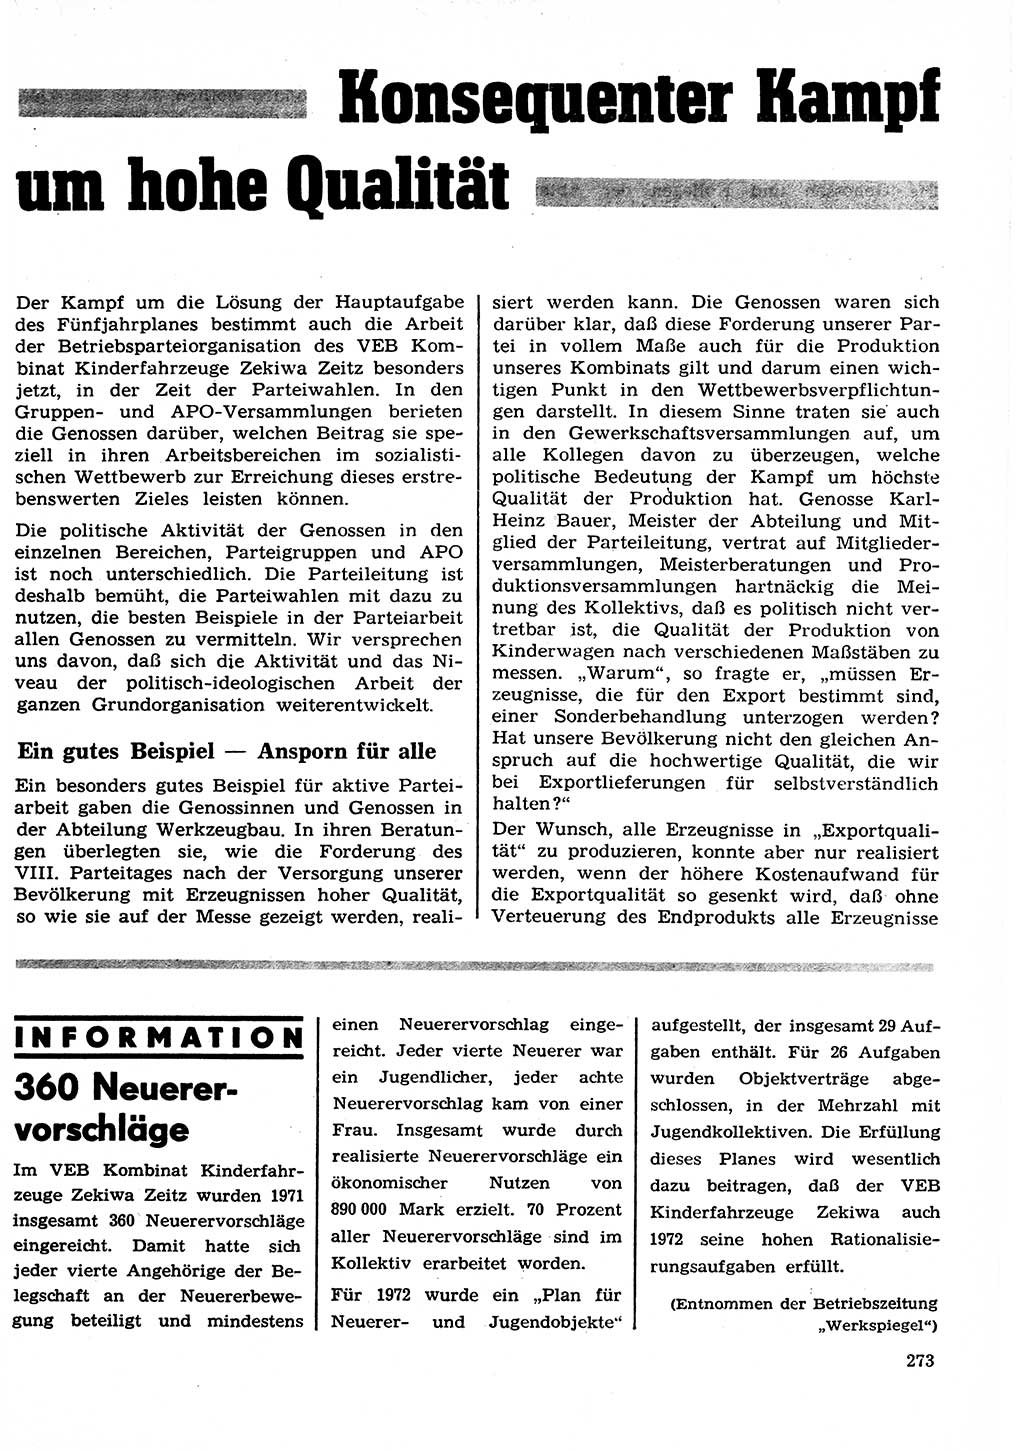 Neuer Weg (NW), Organ des Zentralkomitees (ZK) der SED (Sozialistische Einheitspartei Deutschlands) für Fragen des Parteilebens, 27. Jahrgang [Deutsche Demokratische Republik (DDR)] 1972, Seite 273 (NW ZK SED DDR 1972, S. 273)